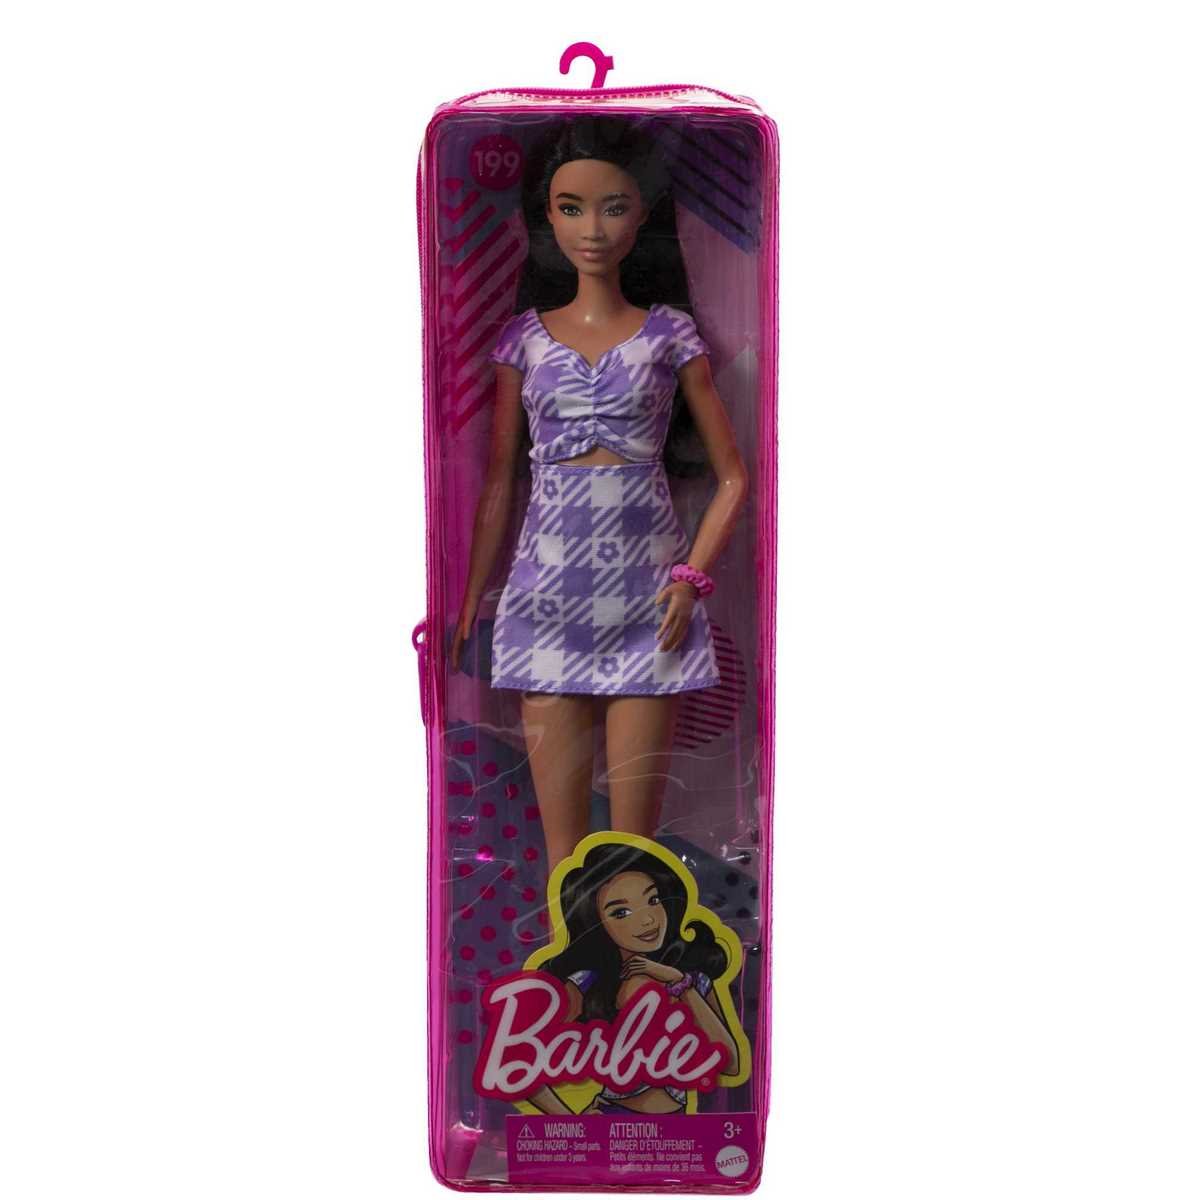 Barbie poupée Fashionistas pas chère pour Noel : 10€